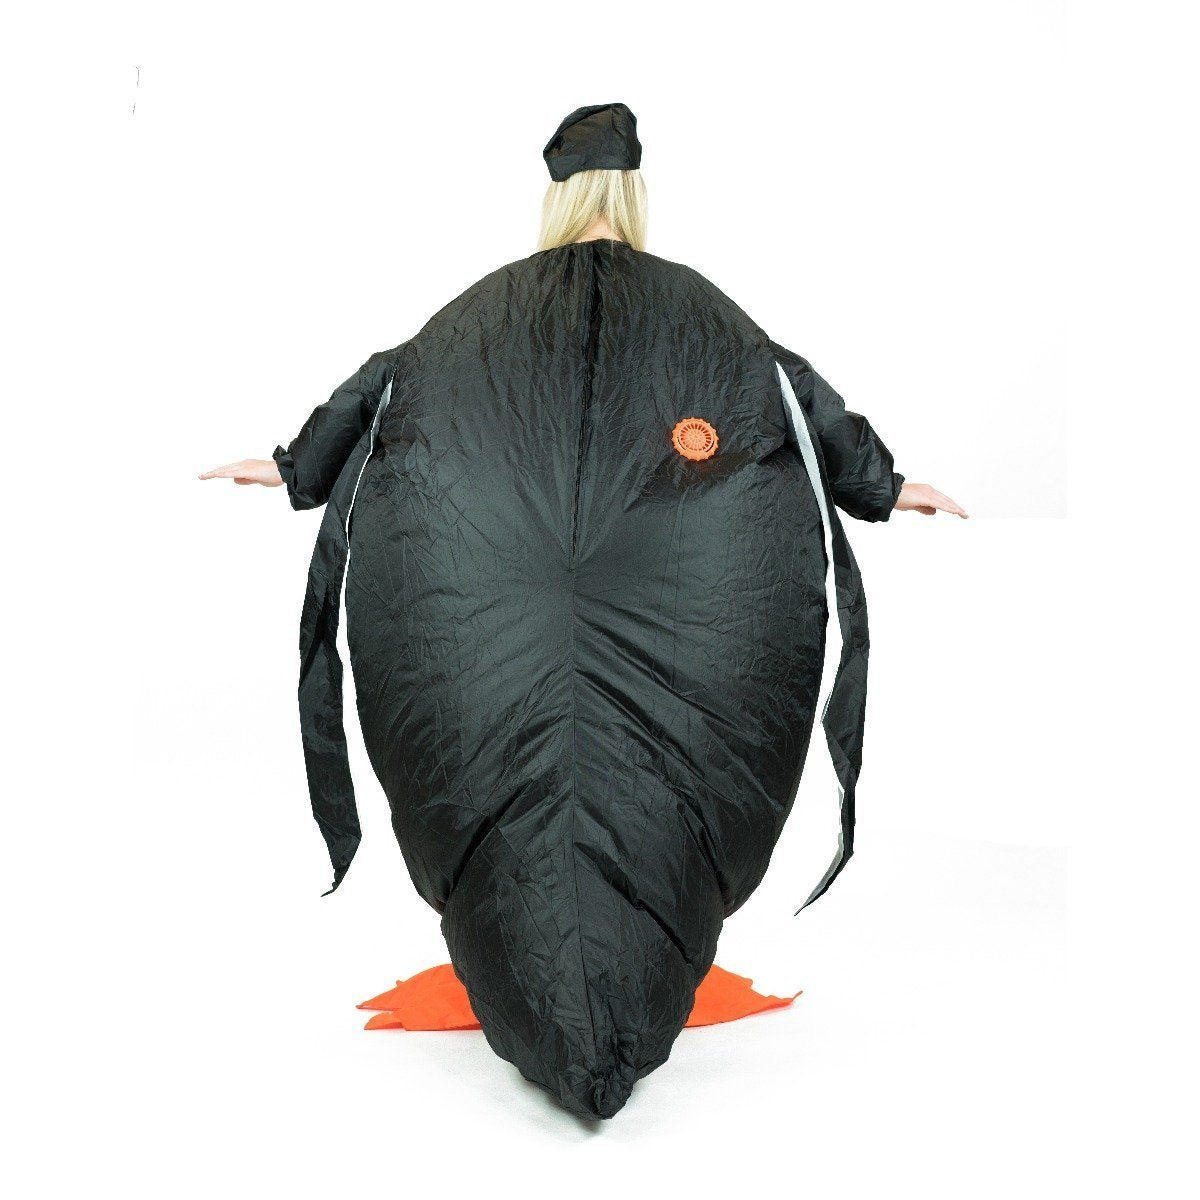 Costume Gonfiabile da Pinguino